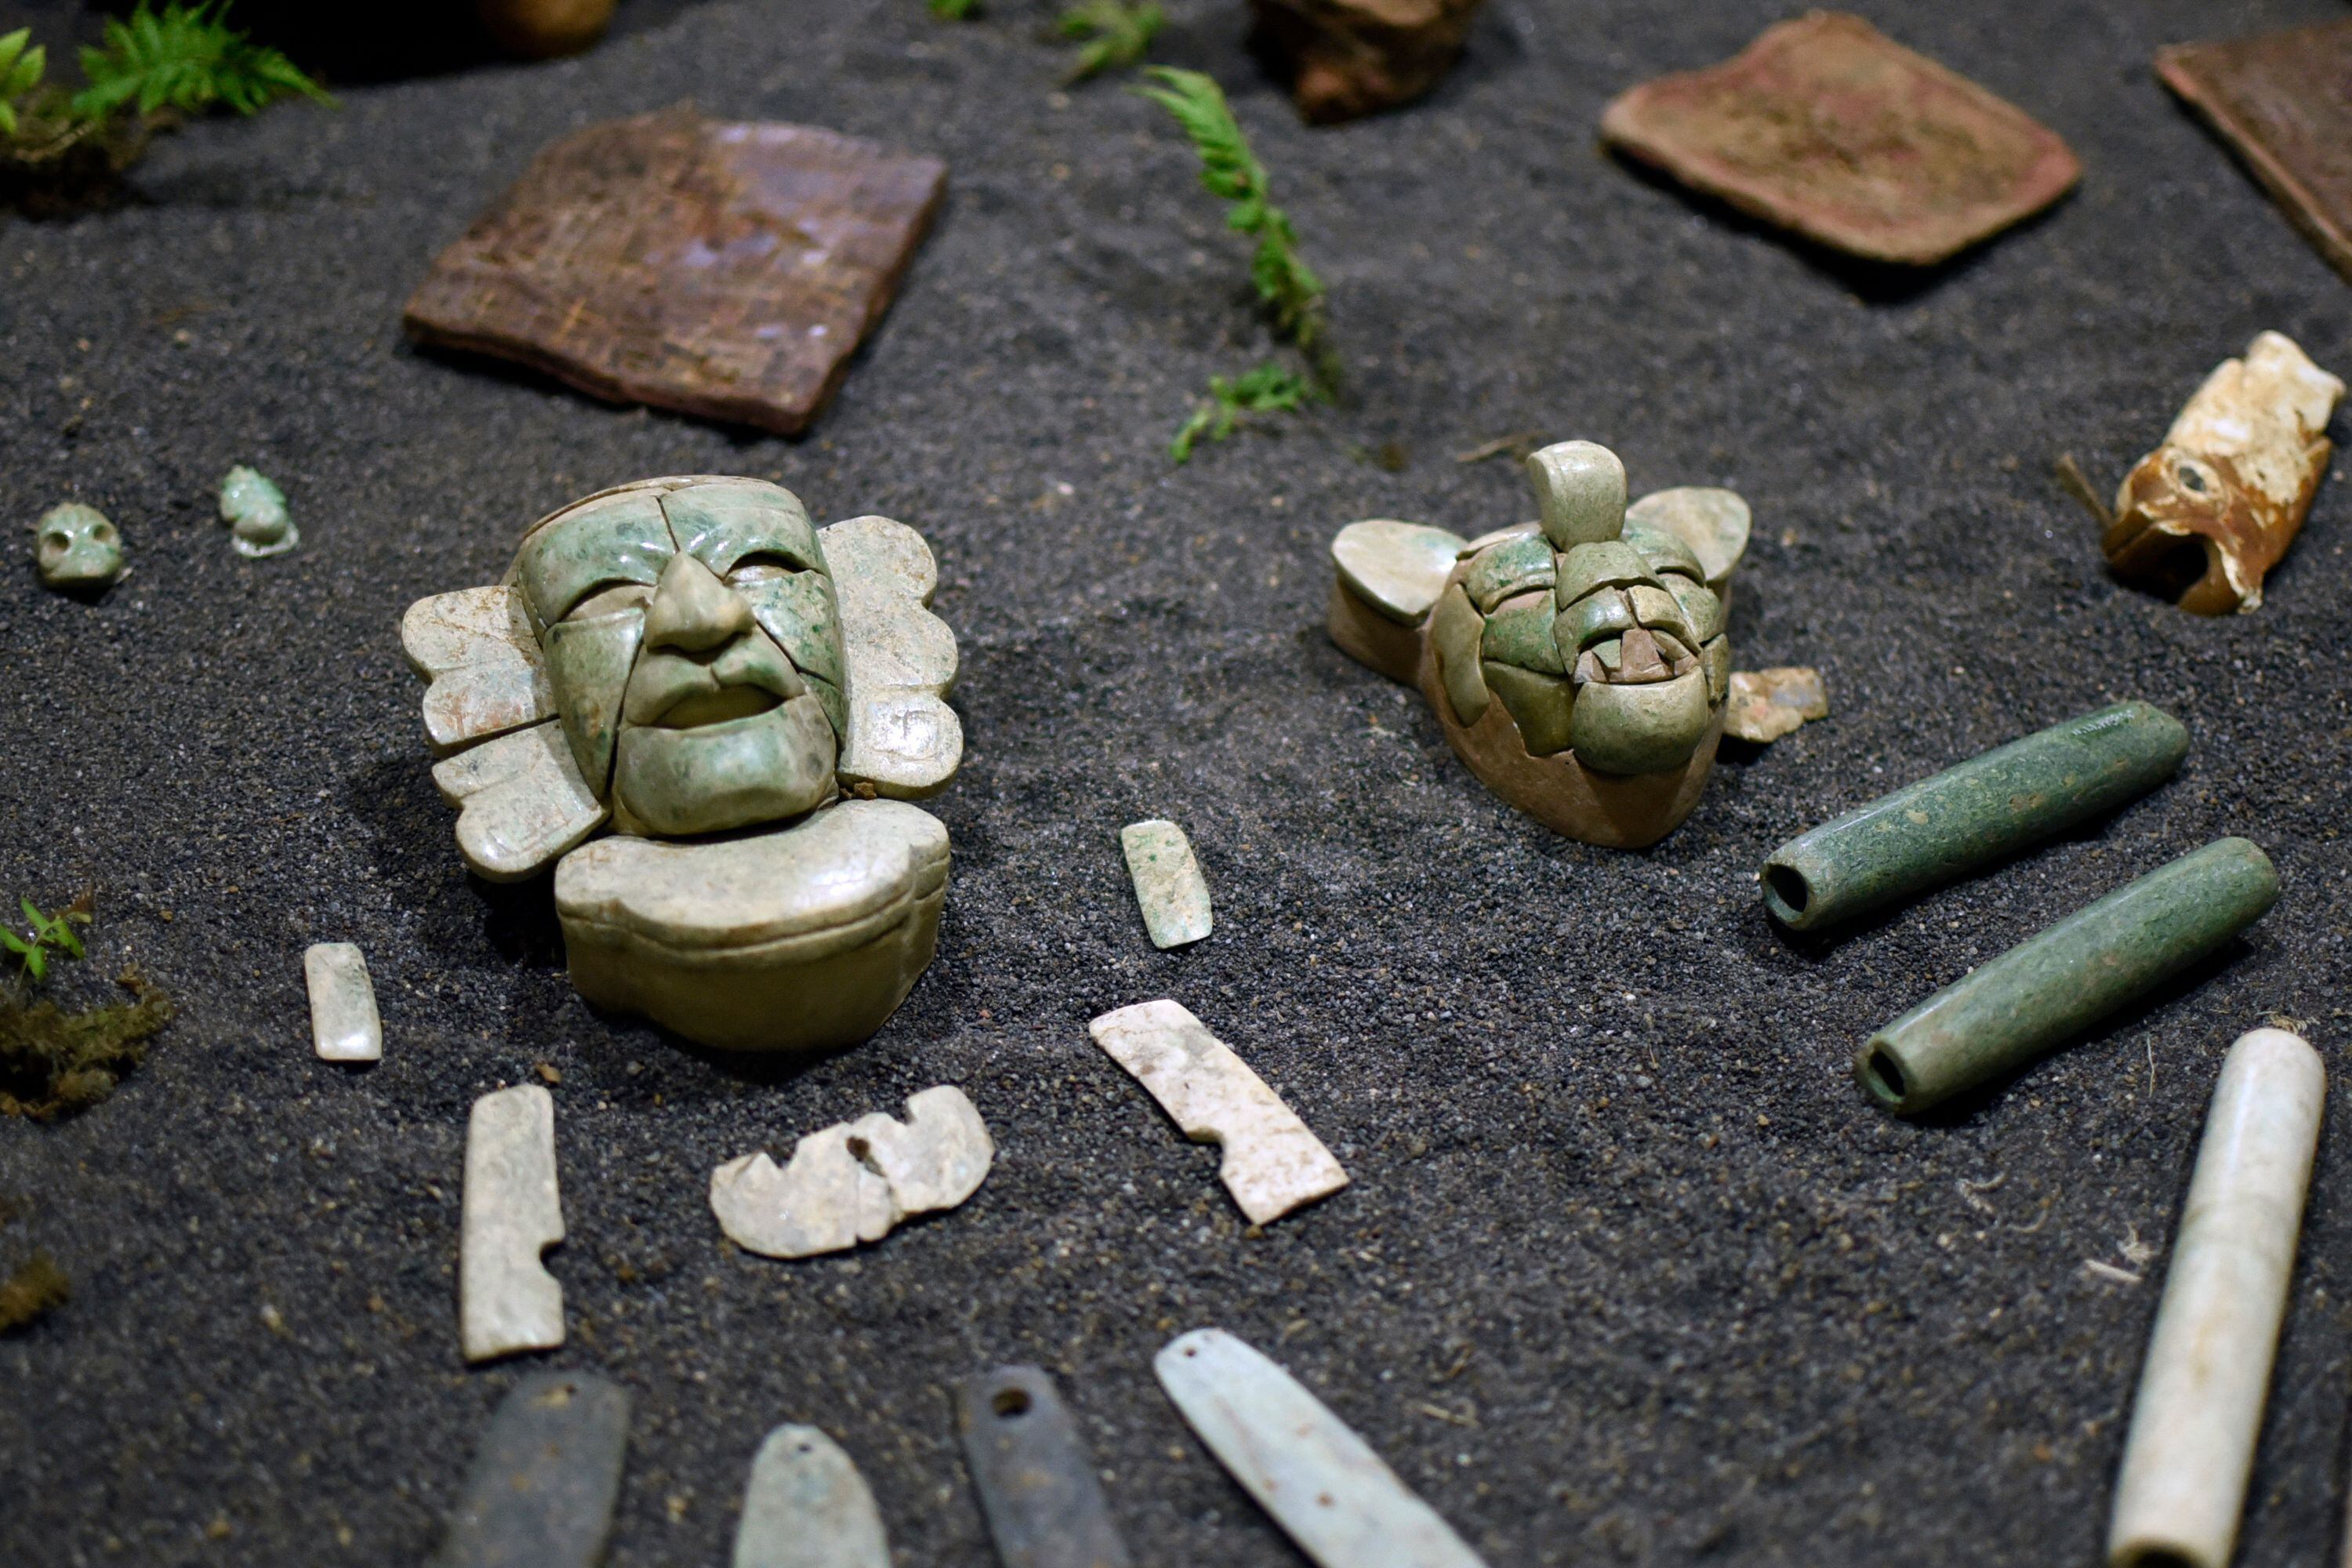 Piezas encontradas en el sitio arqueológico Tak'alik Ab'aj, en el municipio de Asintal, Departamento de Retalhuleu, 200 km al sur de la ciudad de Guatemala.